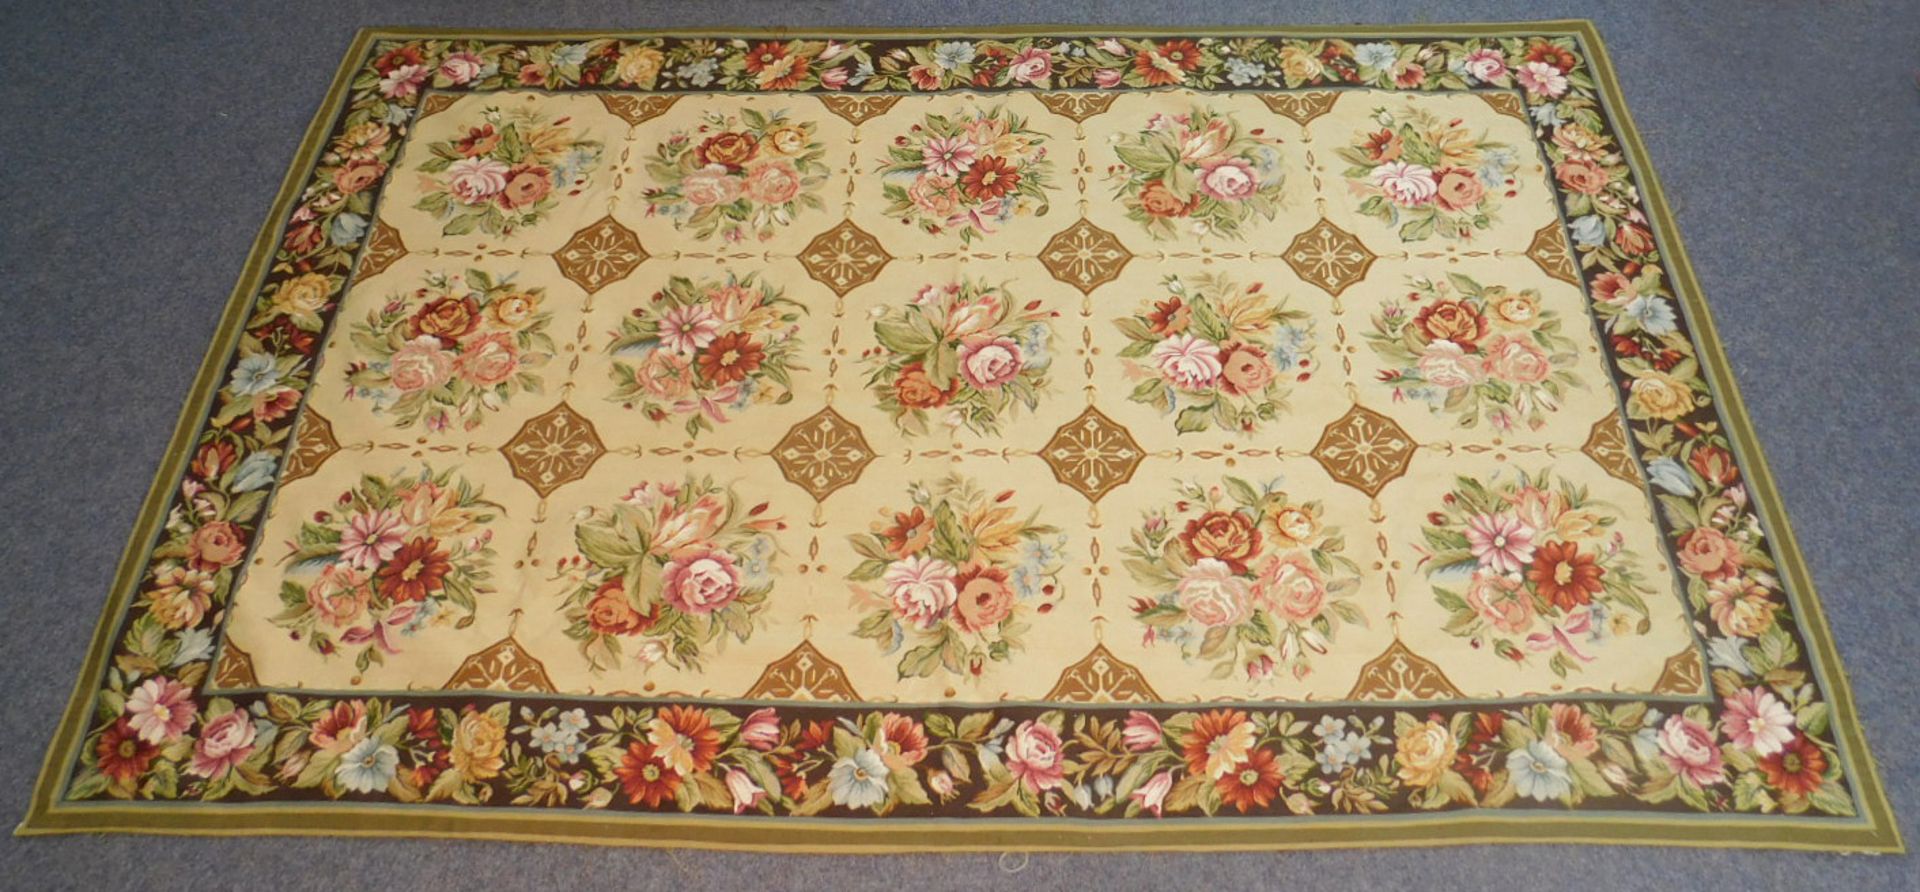 Teppich in Aubusson Technik und Louis XVI Stil. - Bild 5 aus 6